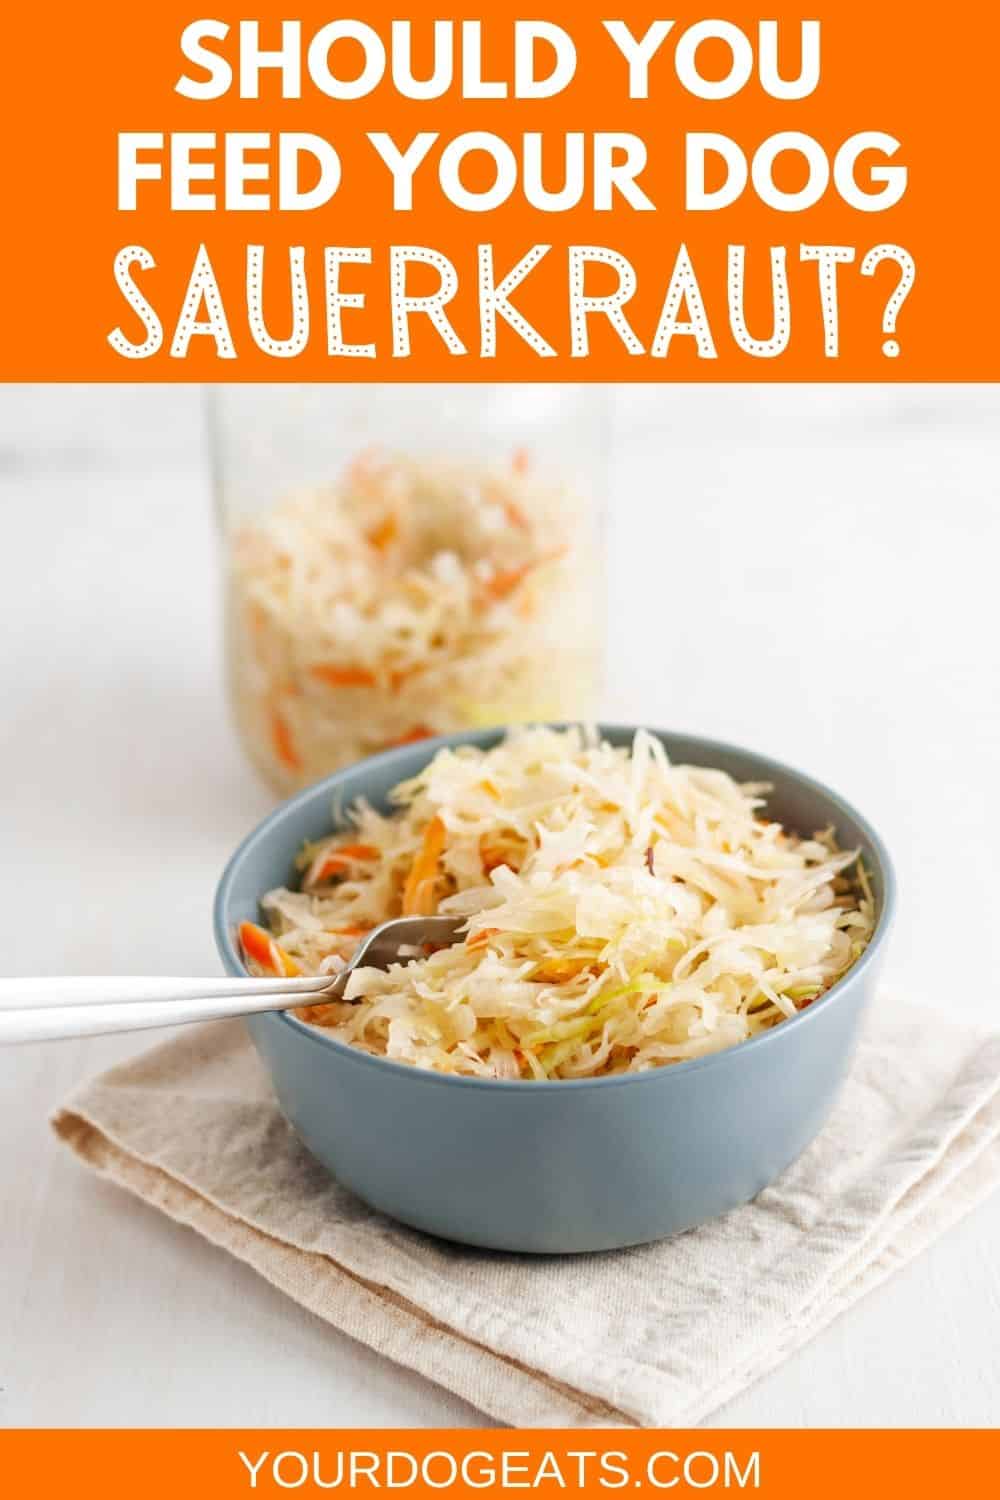 Can Dogs Eat Sauerkraut? | Your Dog Eats